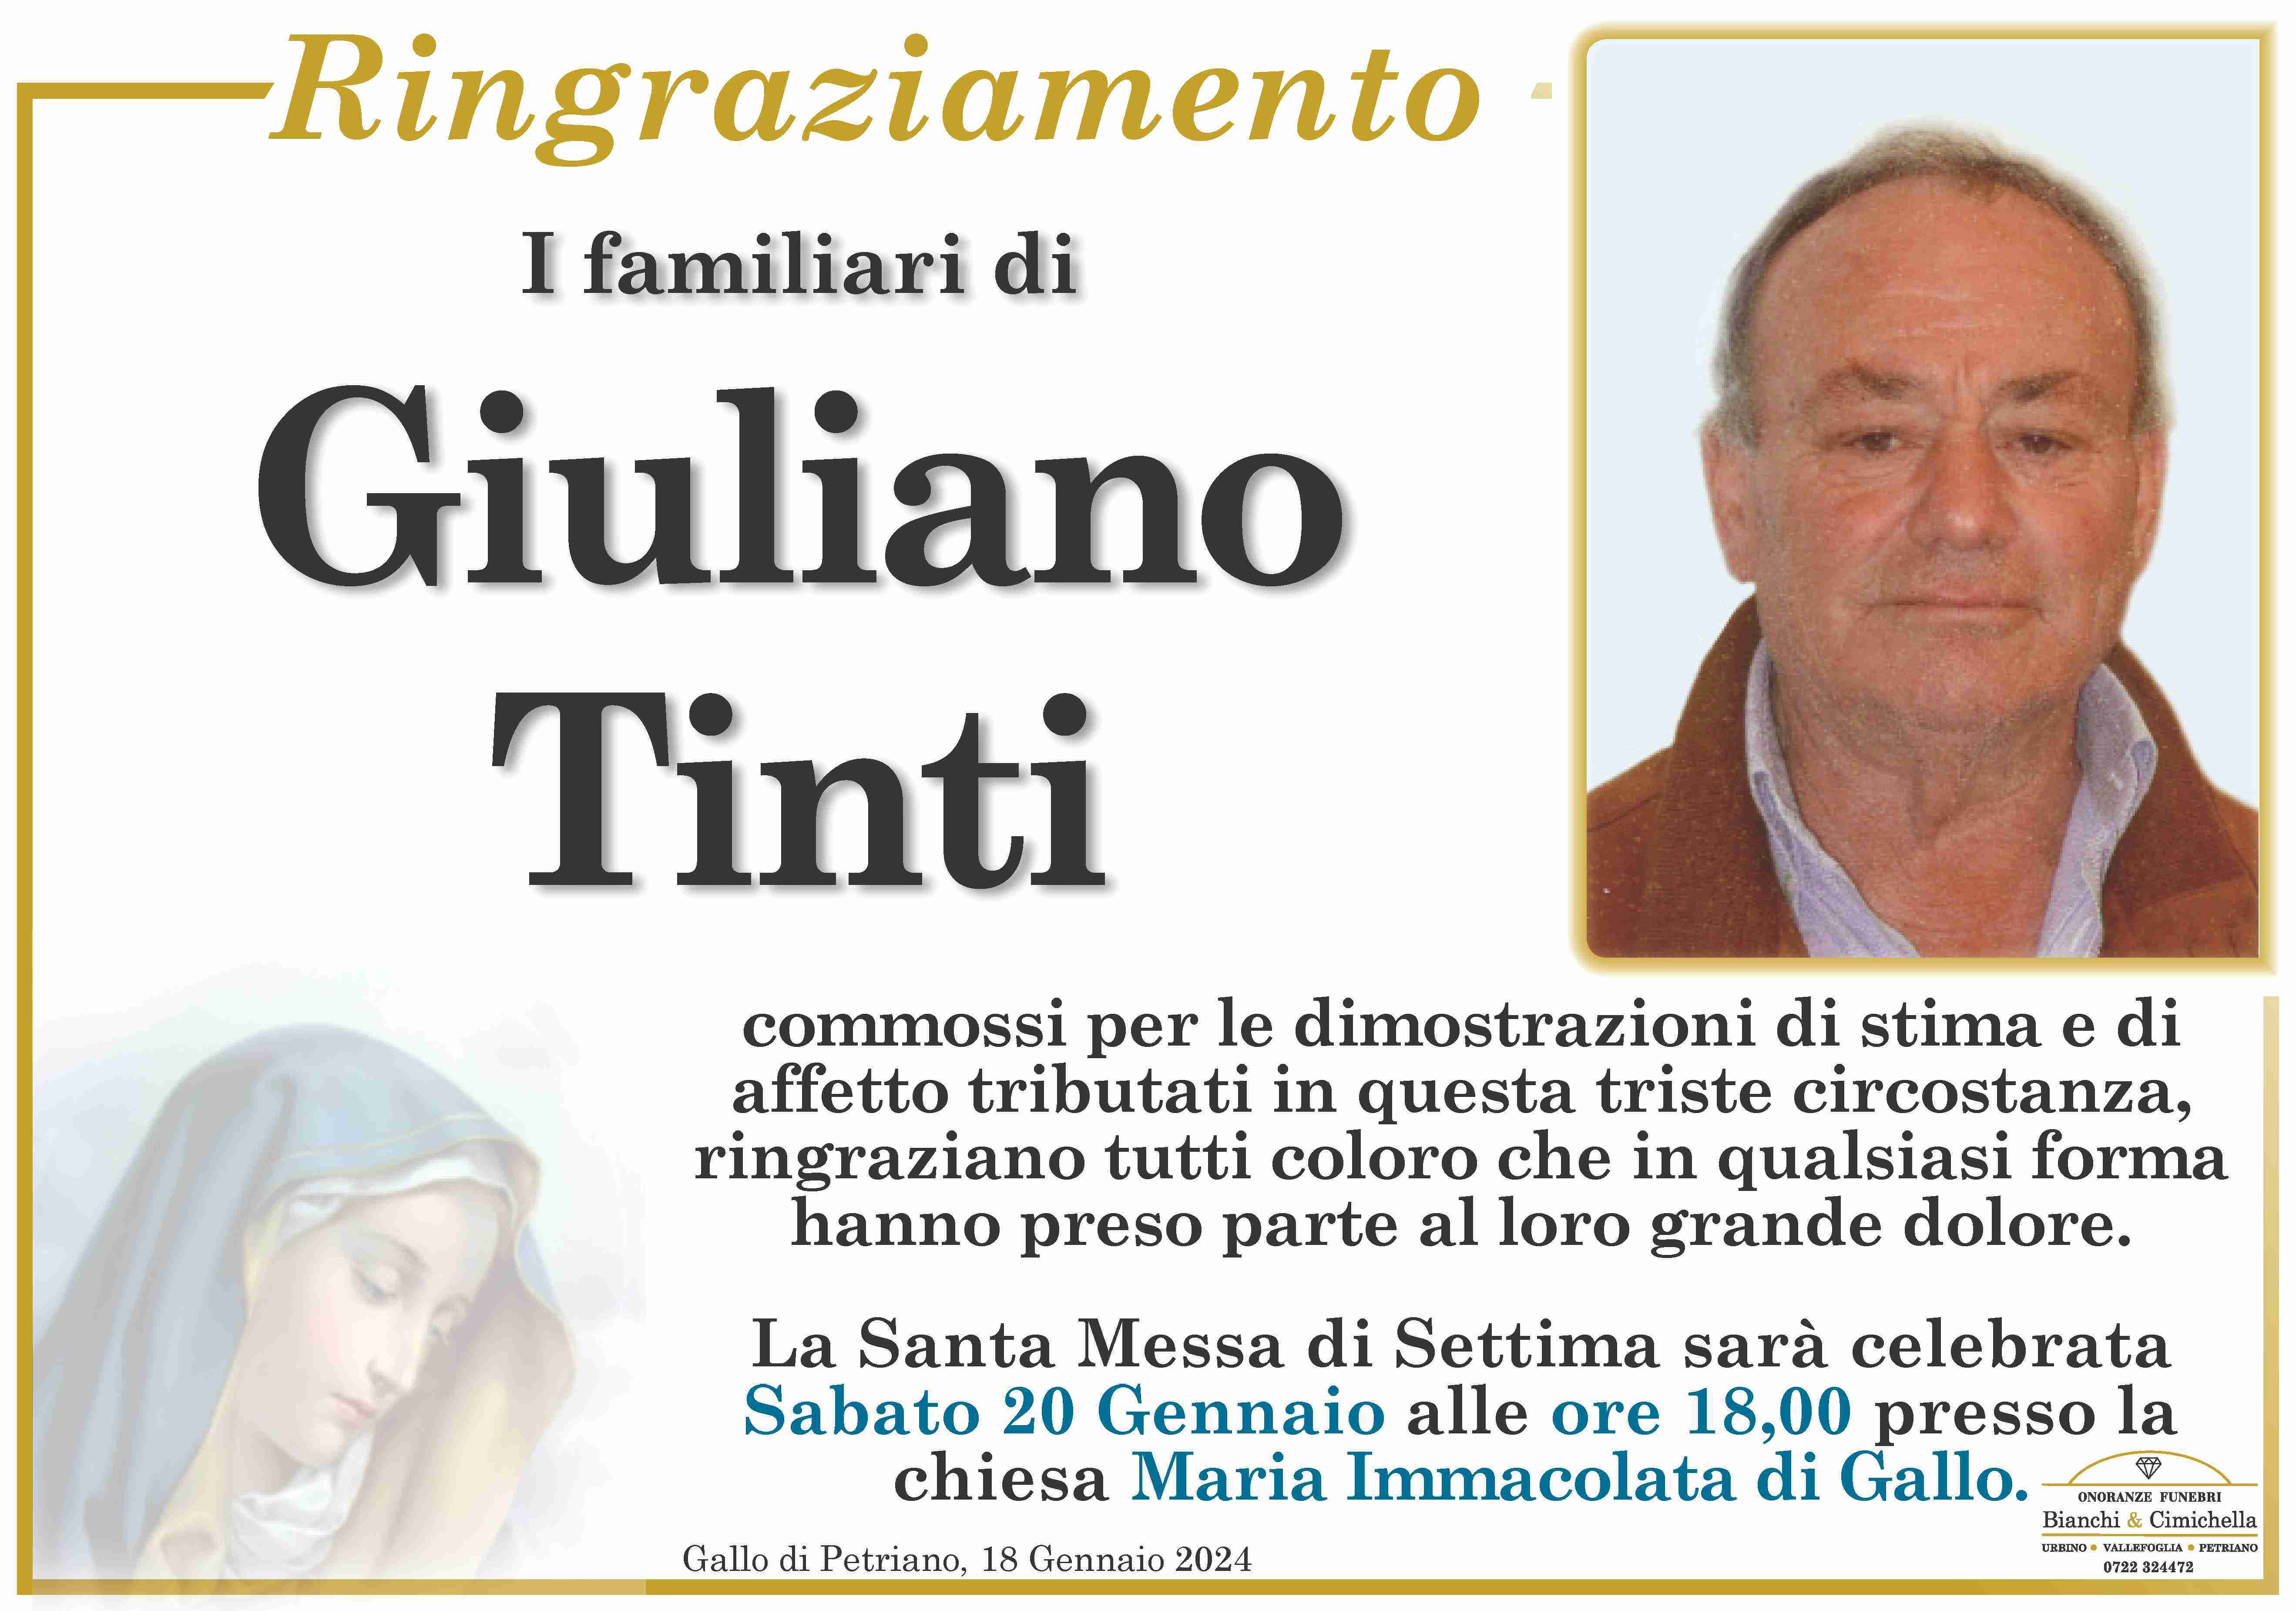 Giuliano Tinti